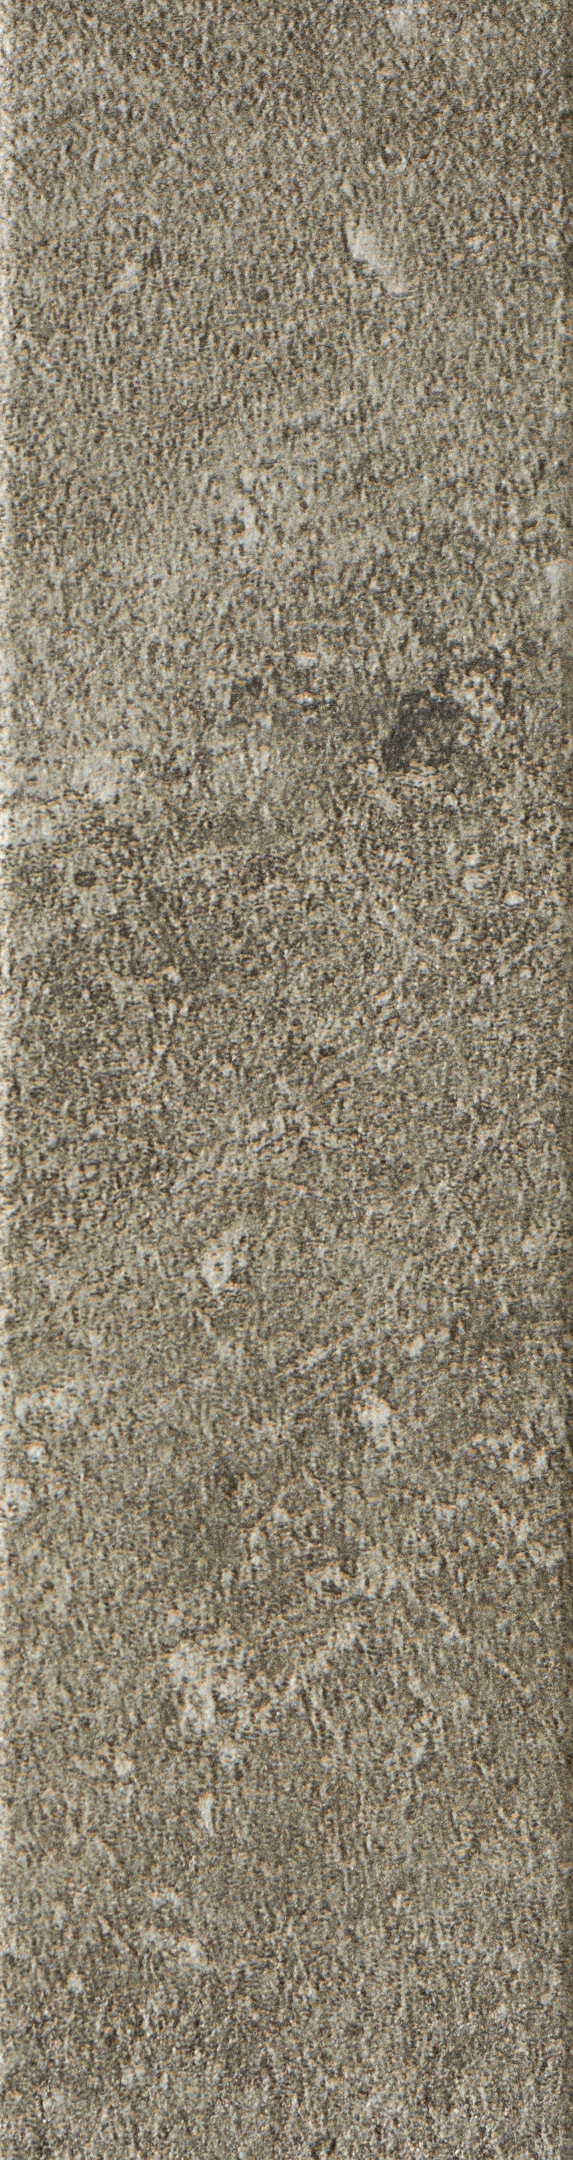 фото Клинкерная плитка керамин юта 2 серая 24,5х6,5 см (34 шт.=0,54 кв.м)